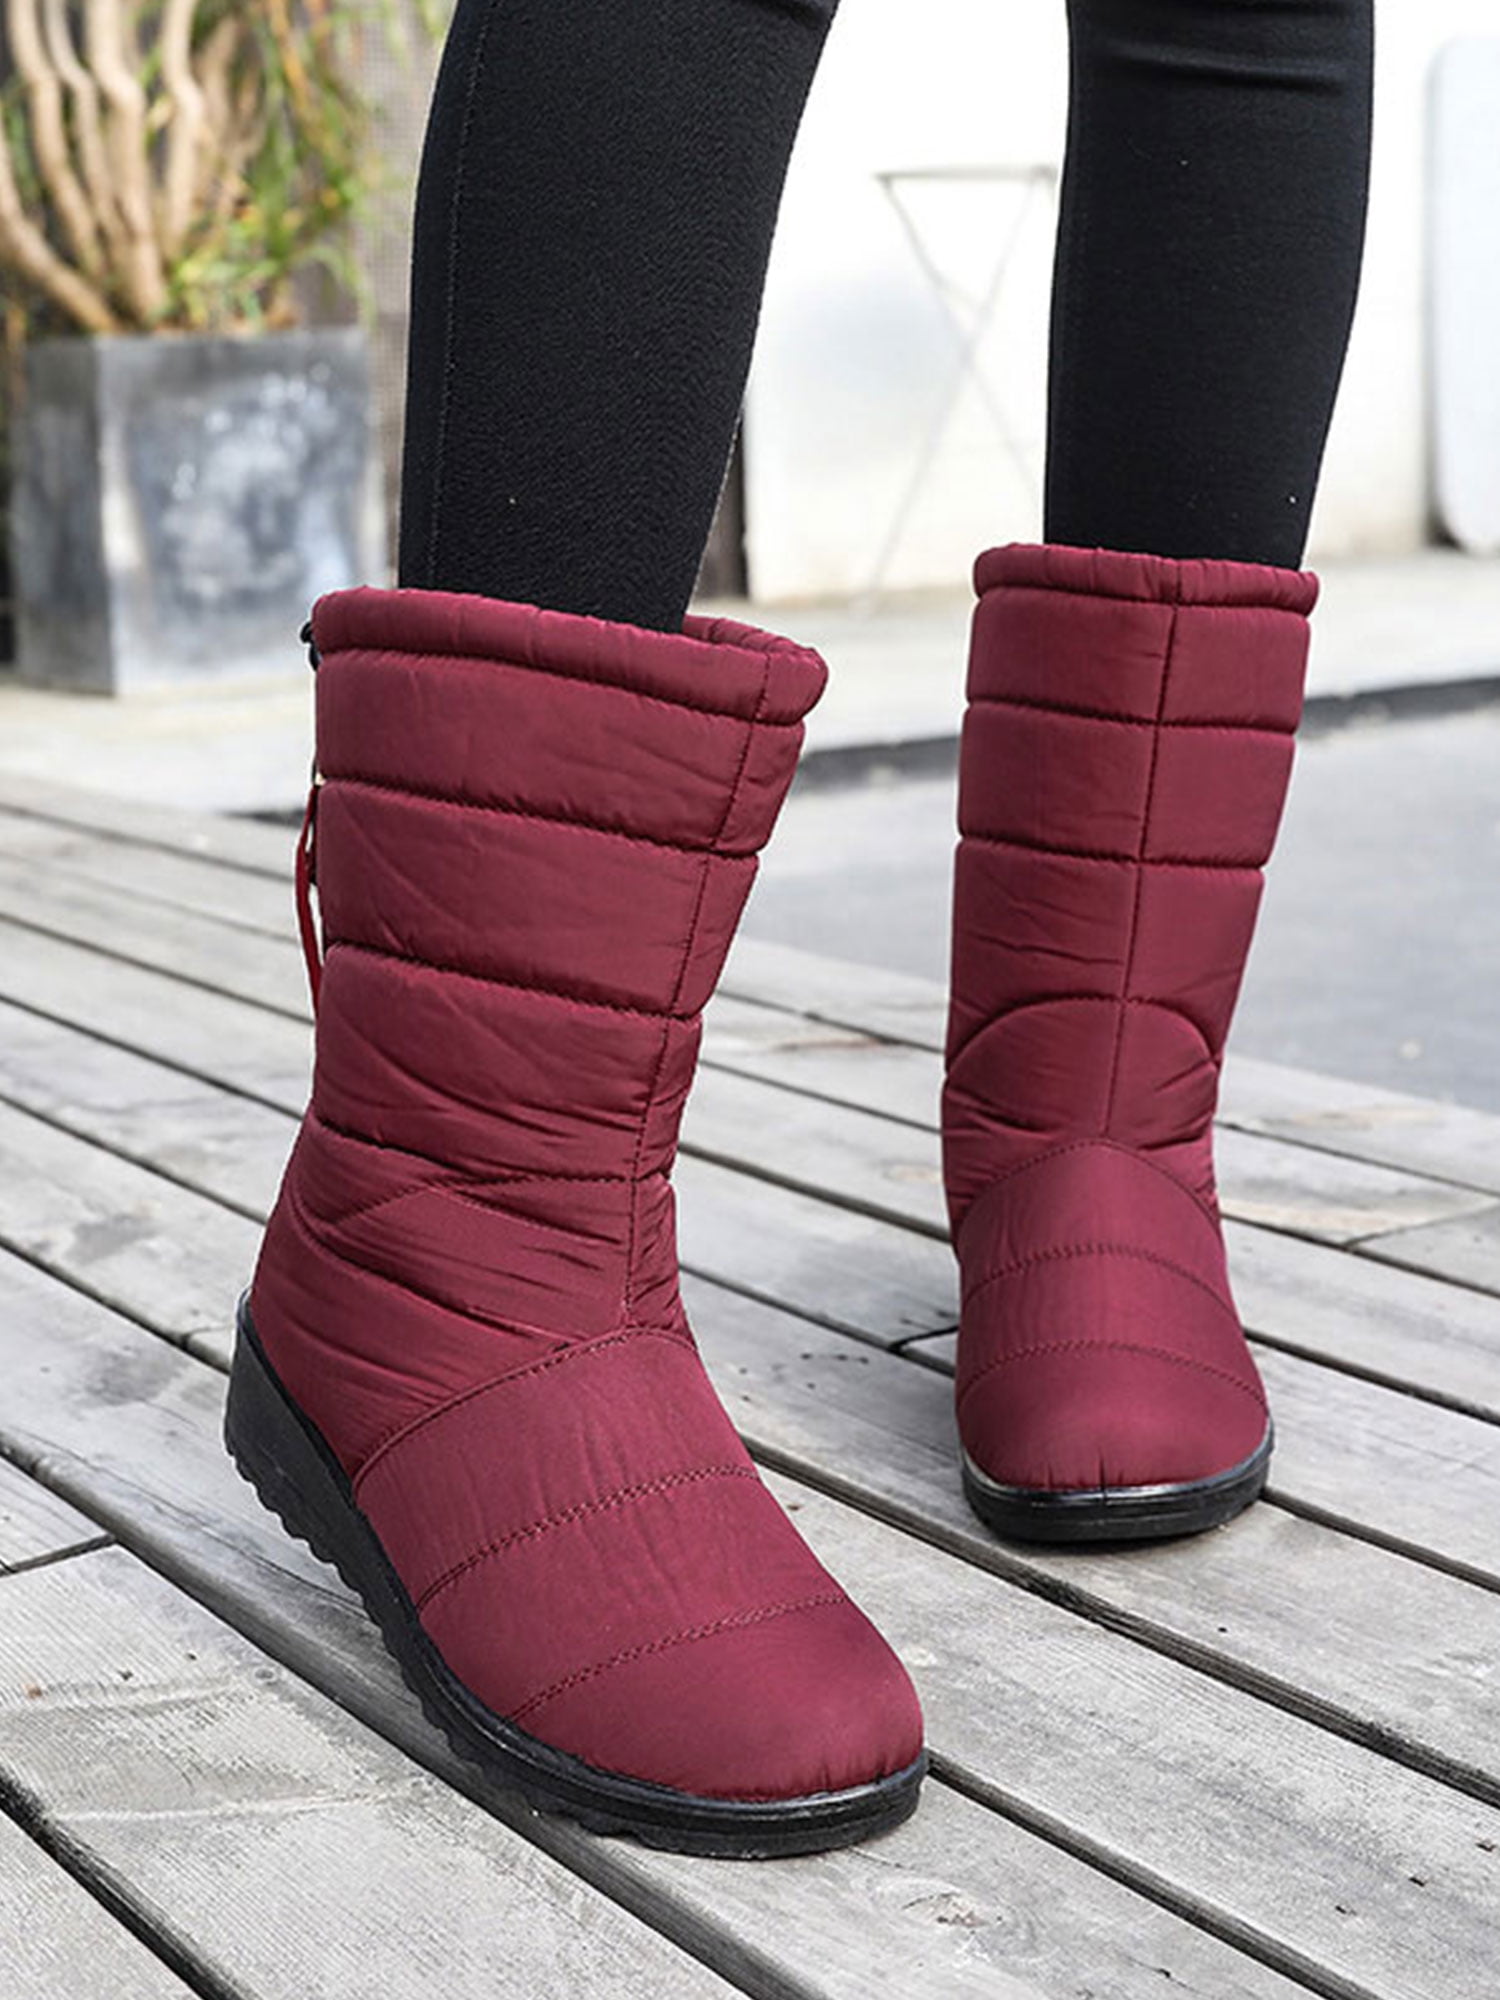 Men's Winter Snow Ankle Boots Shoes Pumps Fur Inside Warm Walking Non-slip Size 